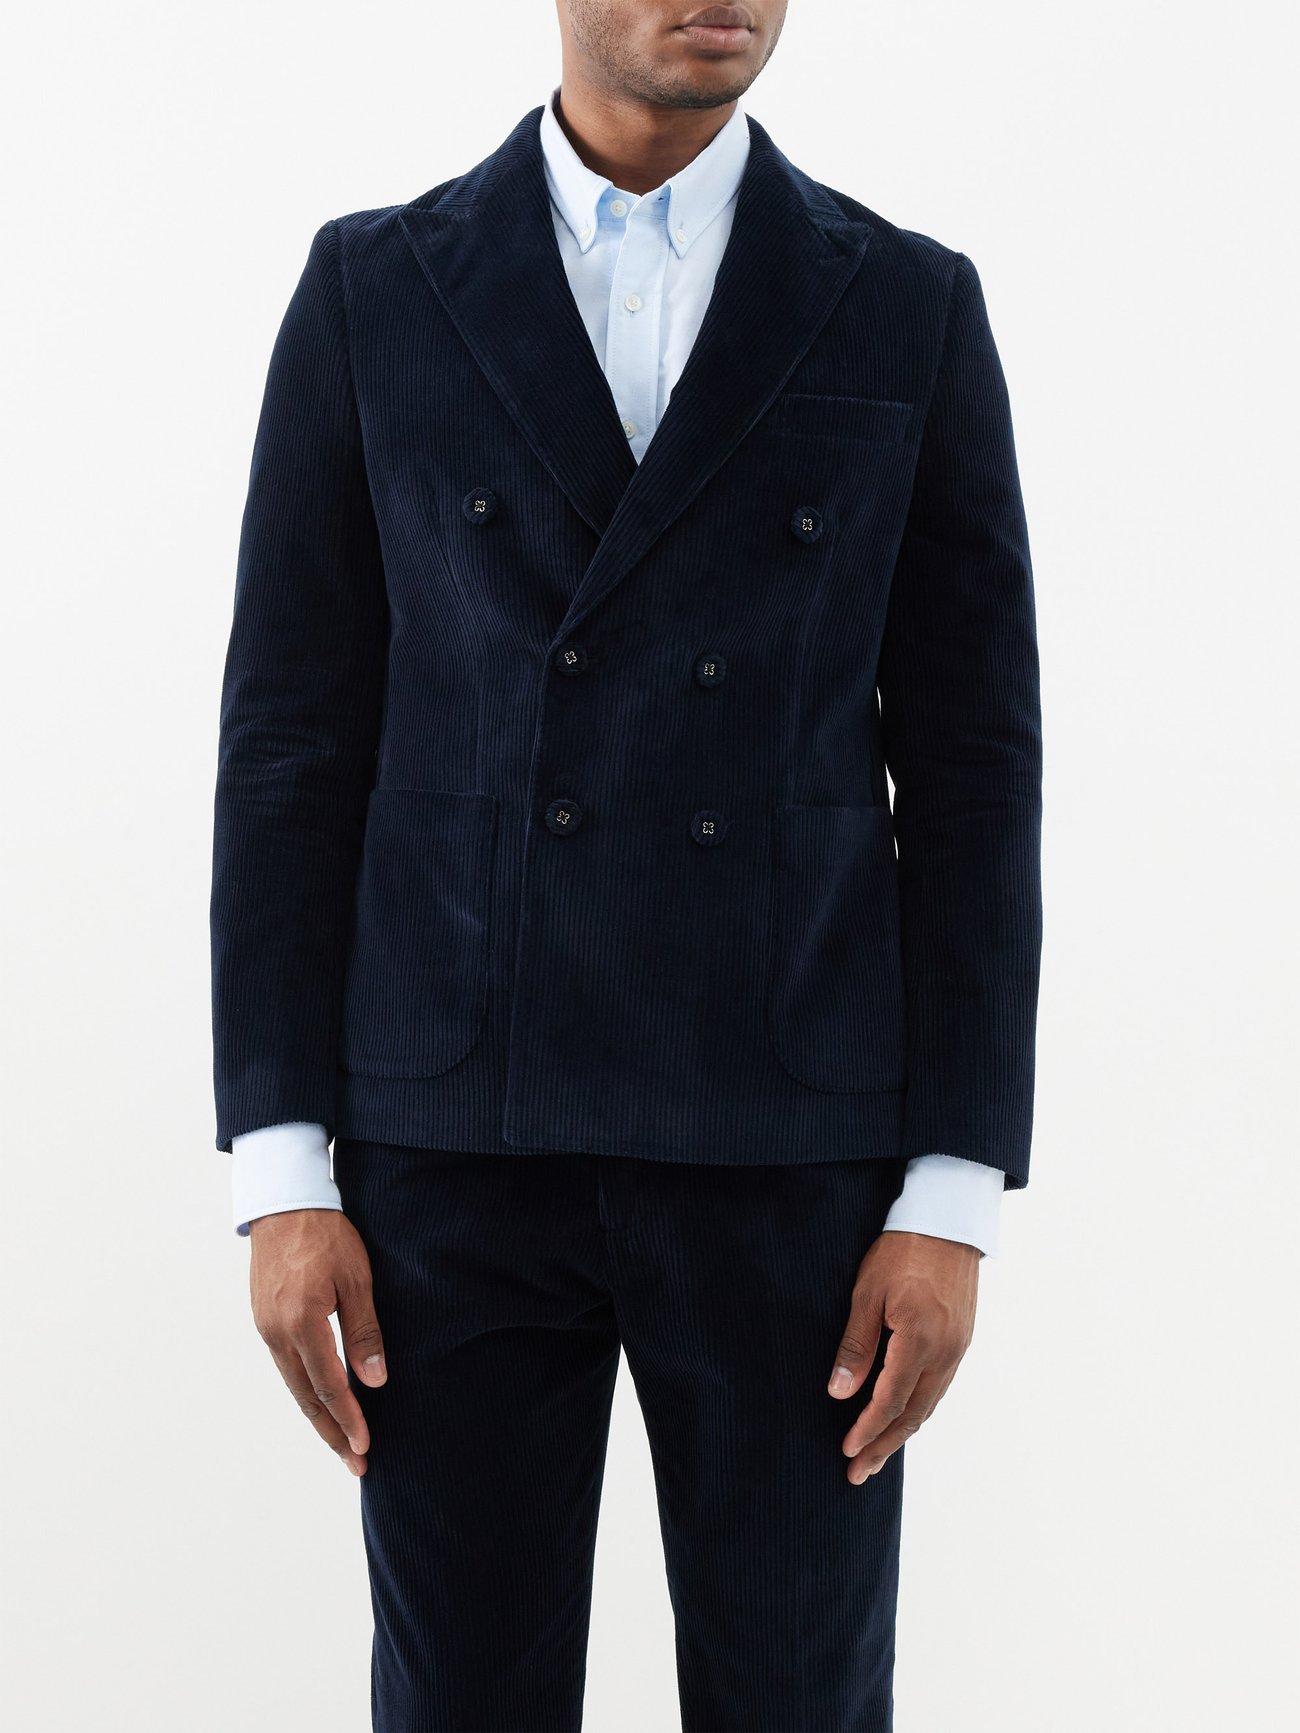 OFFICINE GÉNÉRALE Raphael Double-Breasted Suit Jacket | Endource